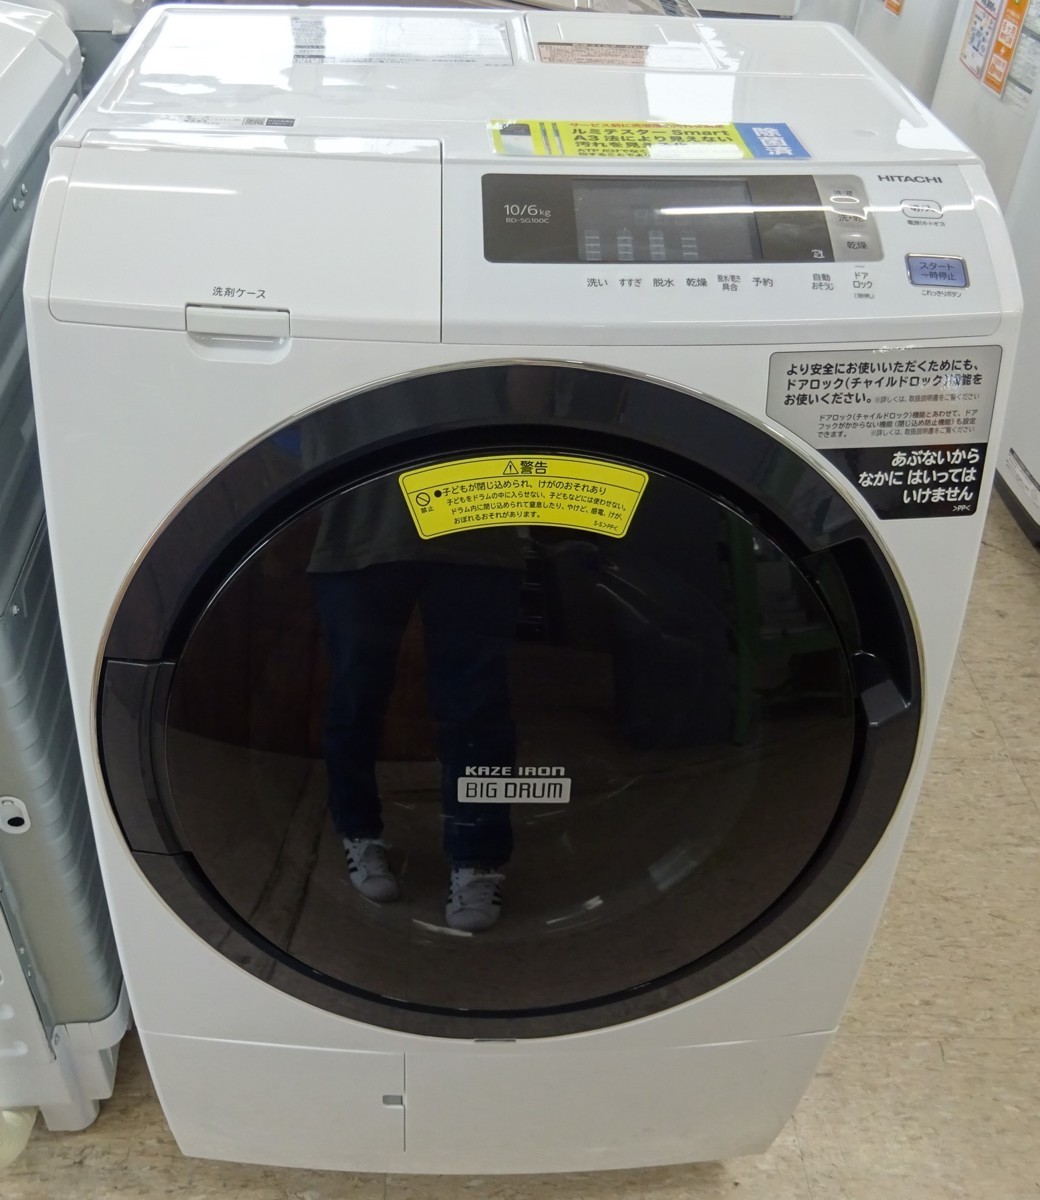 R536 HITACHI 洗濯機 10k BD-SG100C 2019年 引っ越し 中古 最大86%OFFクーポン 宇都宮 リサイクルR 配送OK 新生活 一人暮らし 現物確認可 お買得